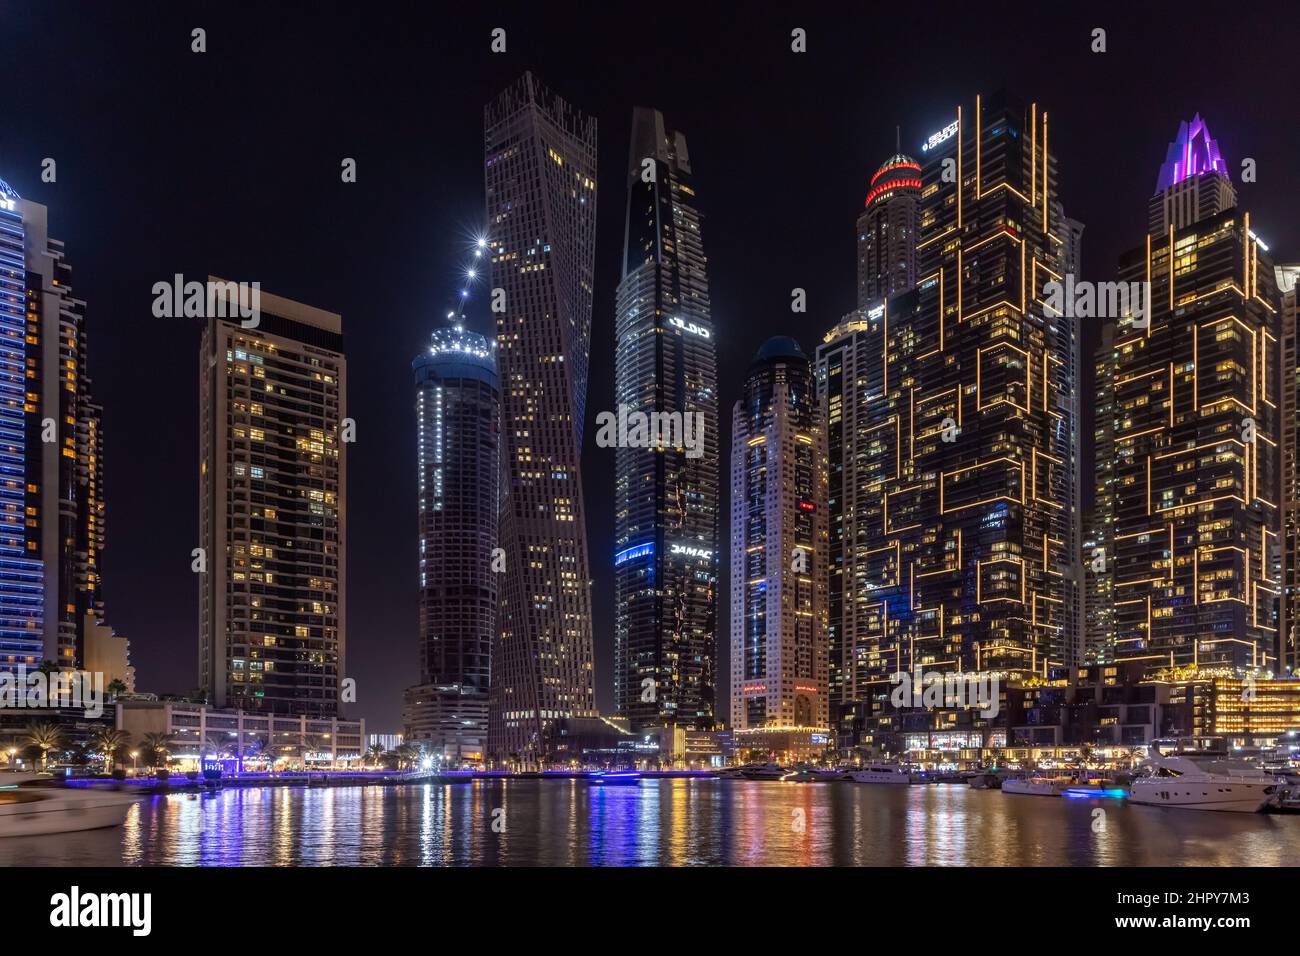 Skyline di grattacieli di notte, con grattacieli, barche e riflessi in acqua, nel quartiere Marina di Dubai, Emirati Arabi Uniti. Foto Stock